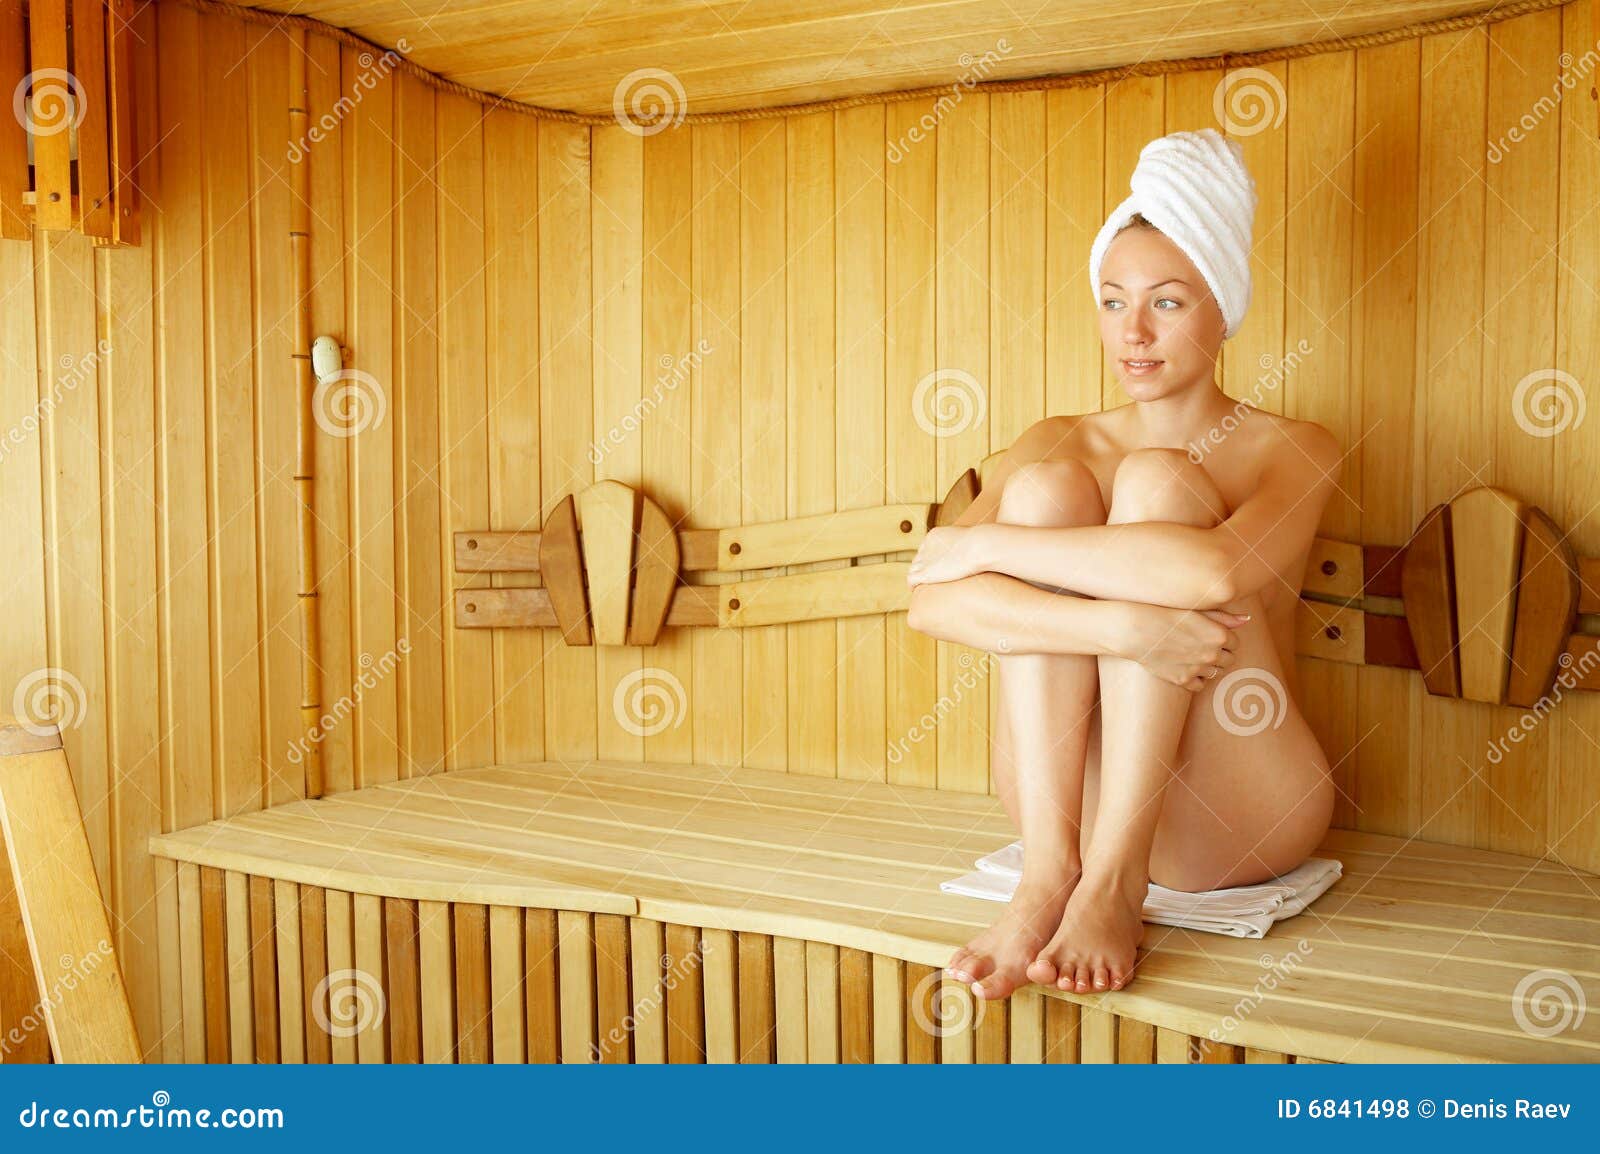 Фото в жен бане